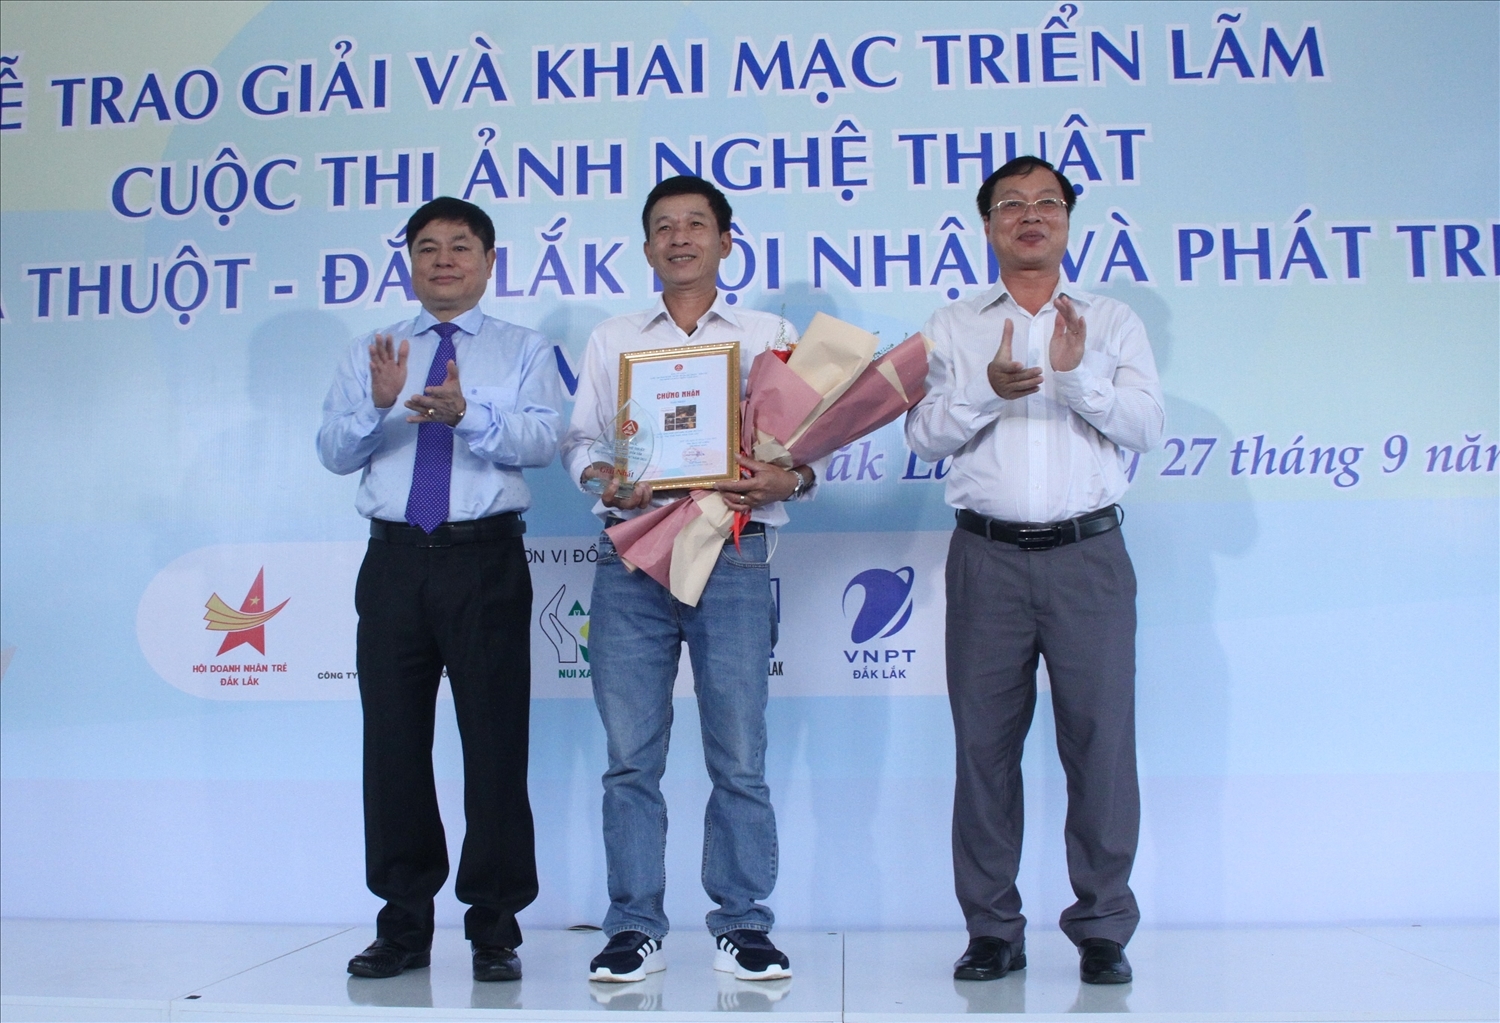 Phó Bí thư Tỉnh ủy Đắk Lắk Phạm Minh Tấn và Phó trưởng Ban Tuyên giáo Tỉnh ủy Huỳnh Chiến Thắng trao giải Nhất cho tác giả Tôn Thất Tuấn Ninh